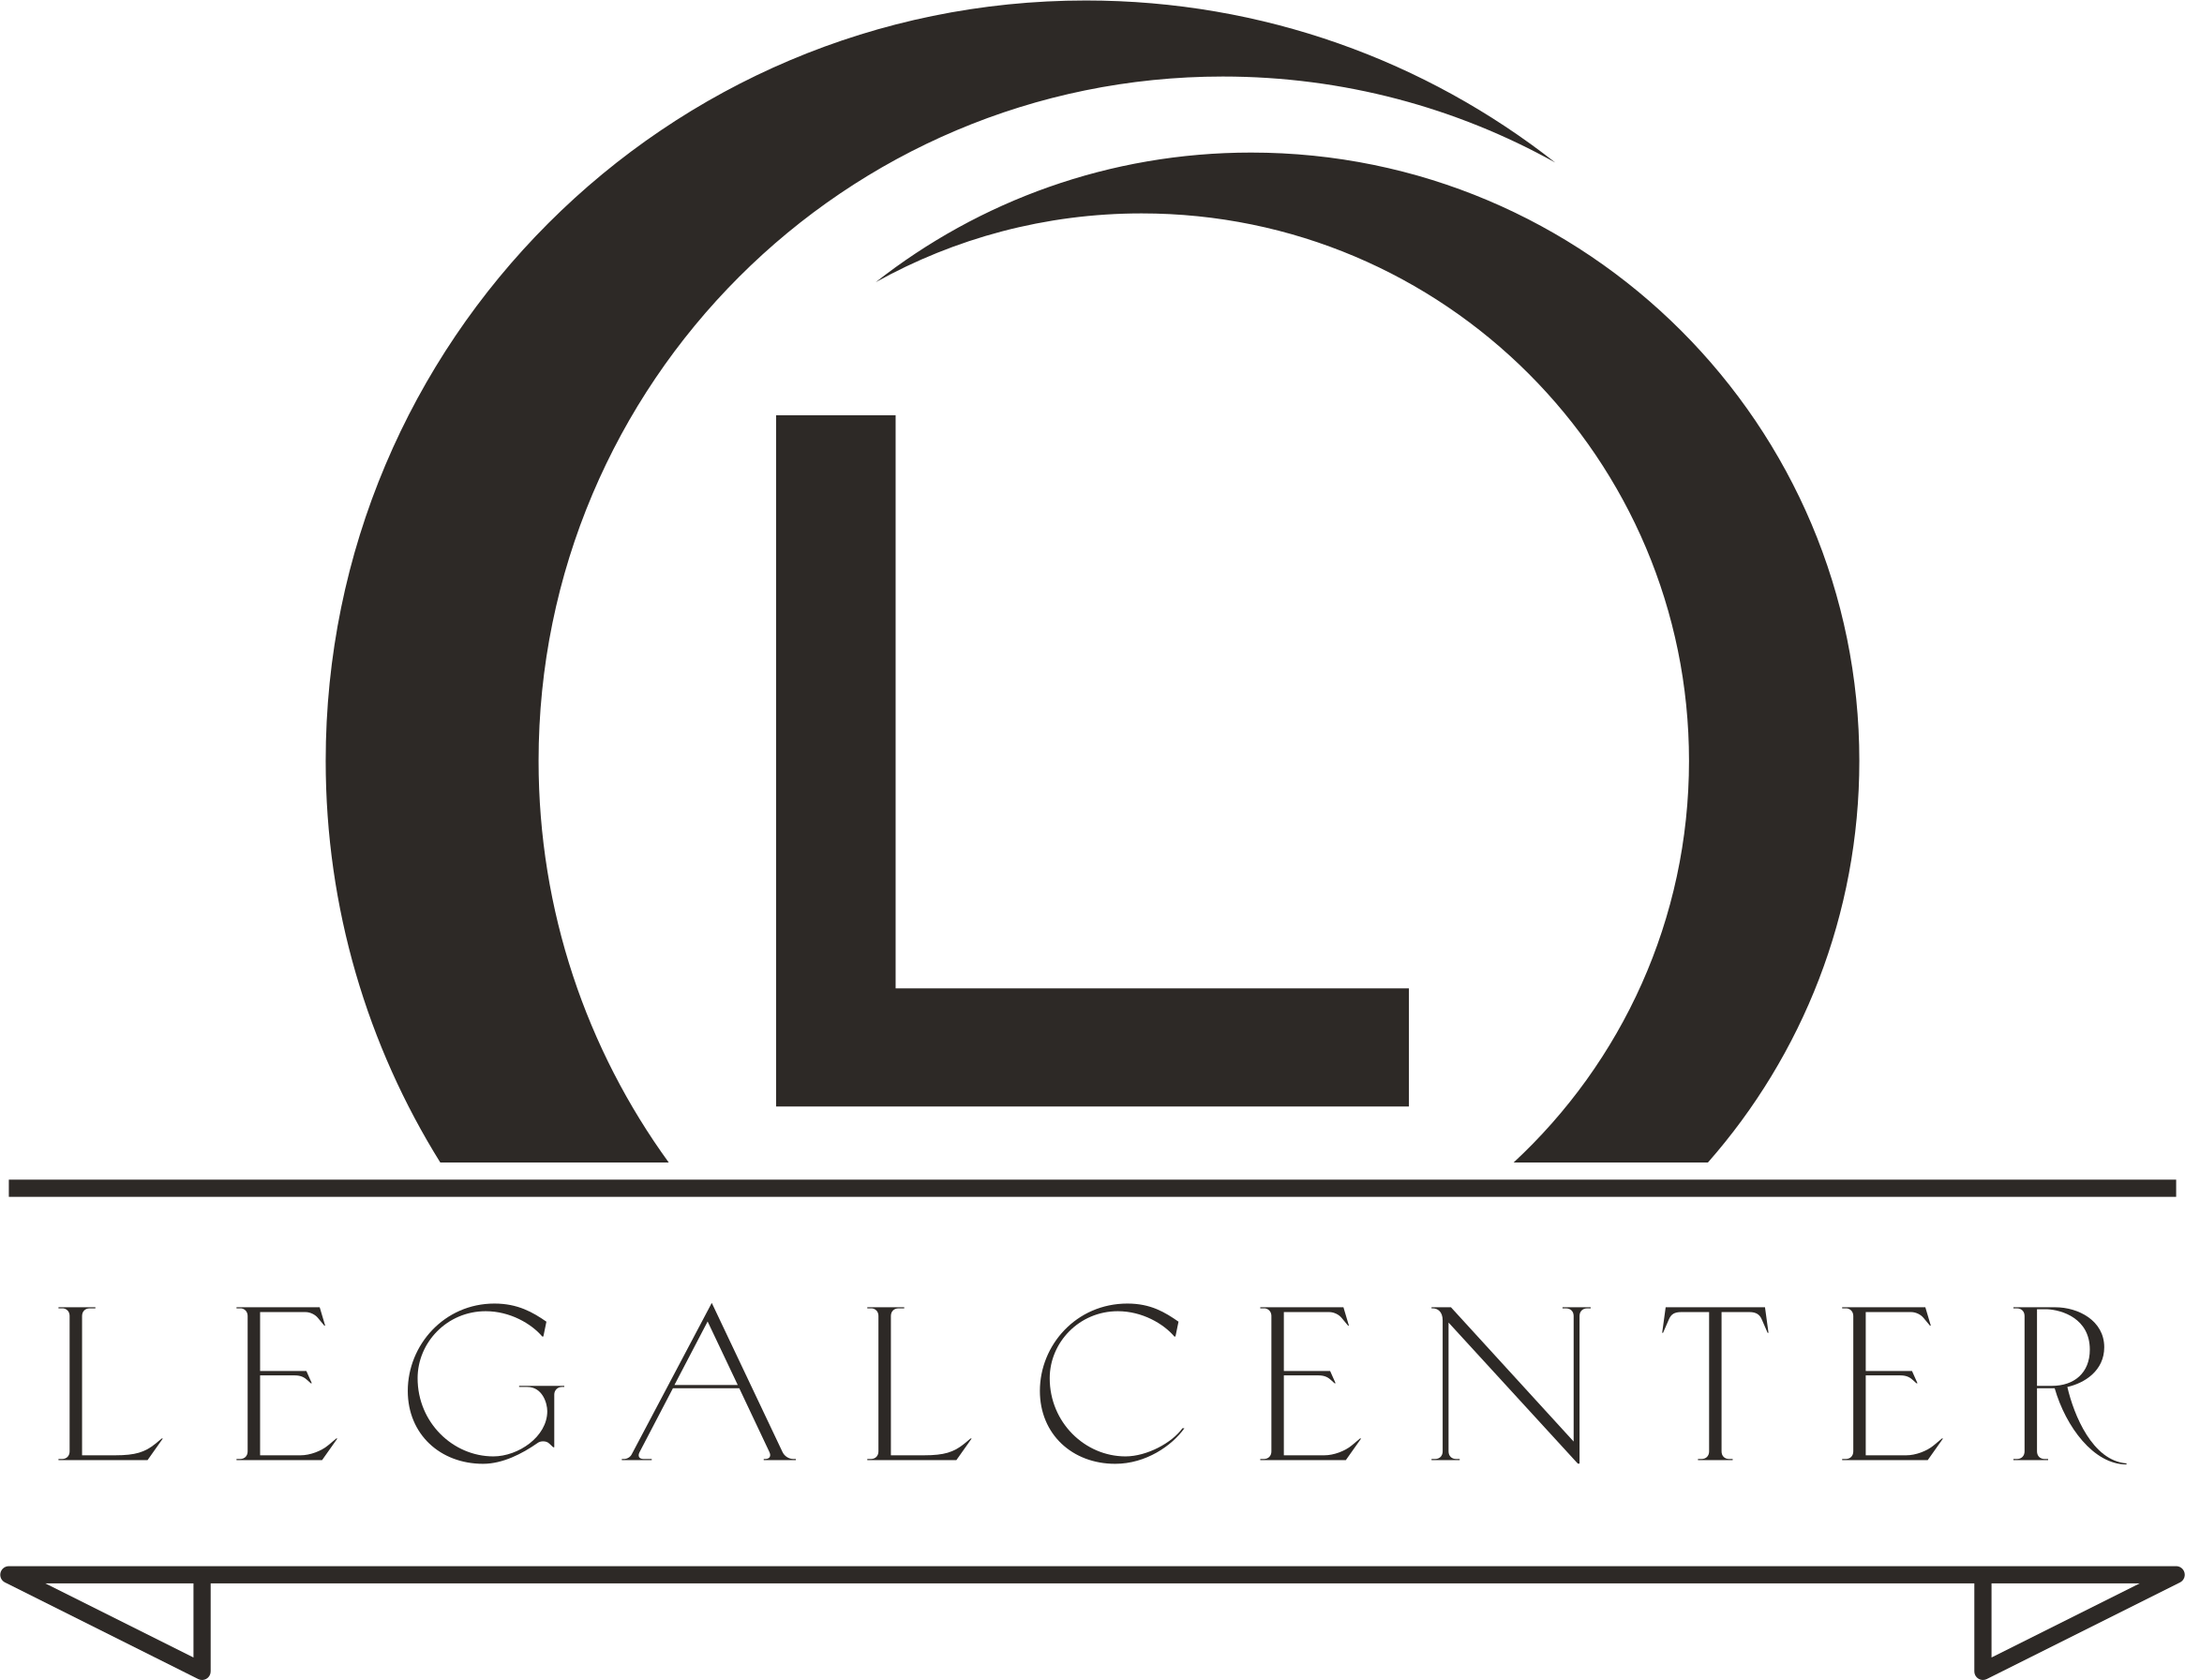 Logo des Legalcenters, der Buchstabe "L" in einem geschwungenen Kreis, darunter der Schriftzug Legalcenter, alles in schwarz auf transparentem Hintergrund